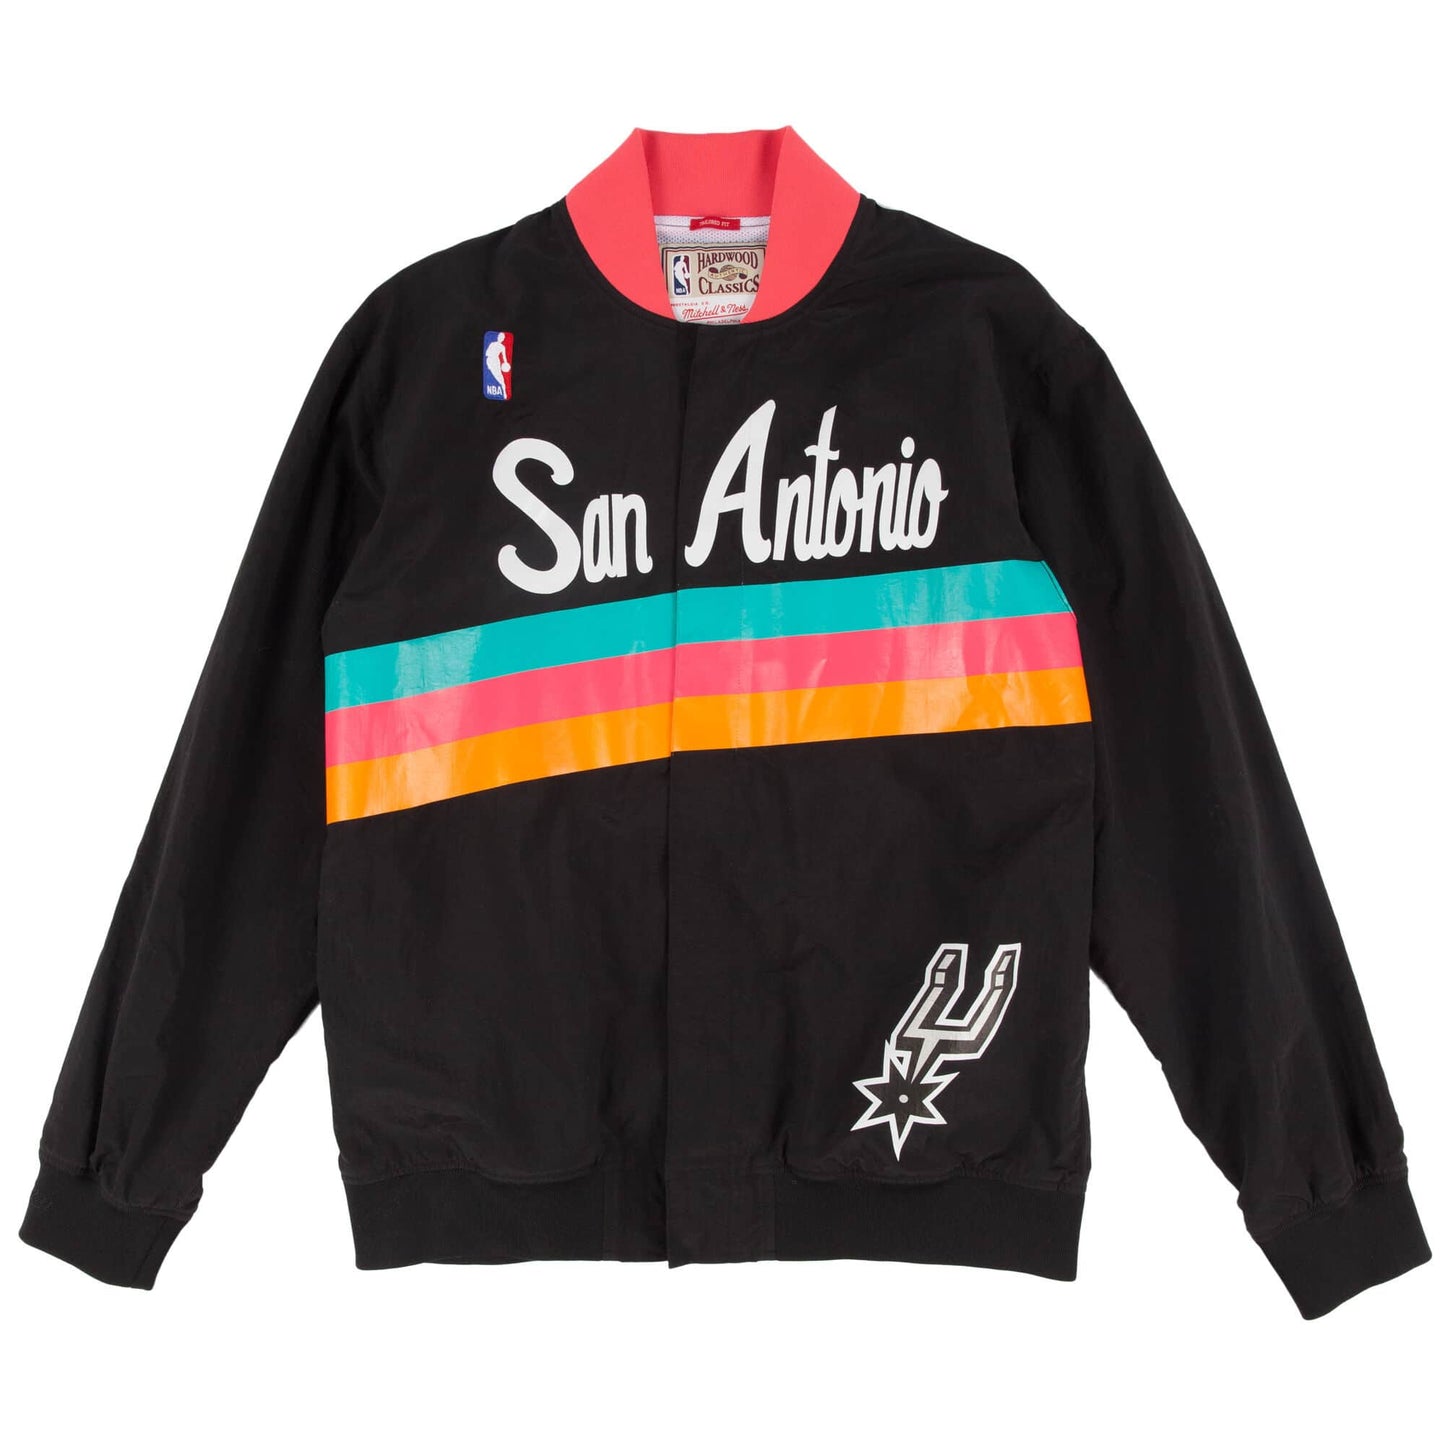 Authentic Warm Up Jacket San Antonio Spurs 1994-95